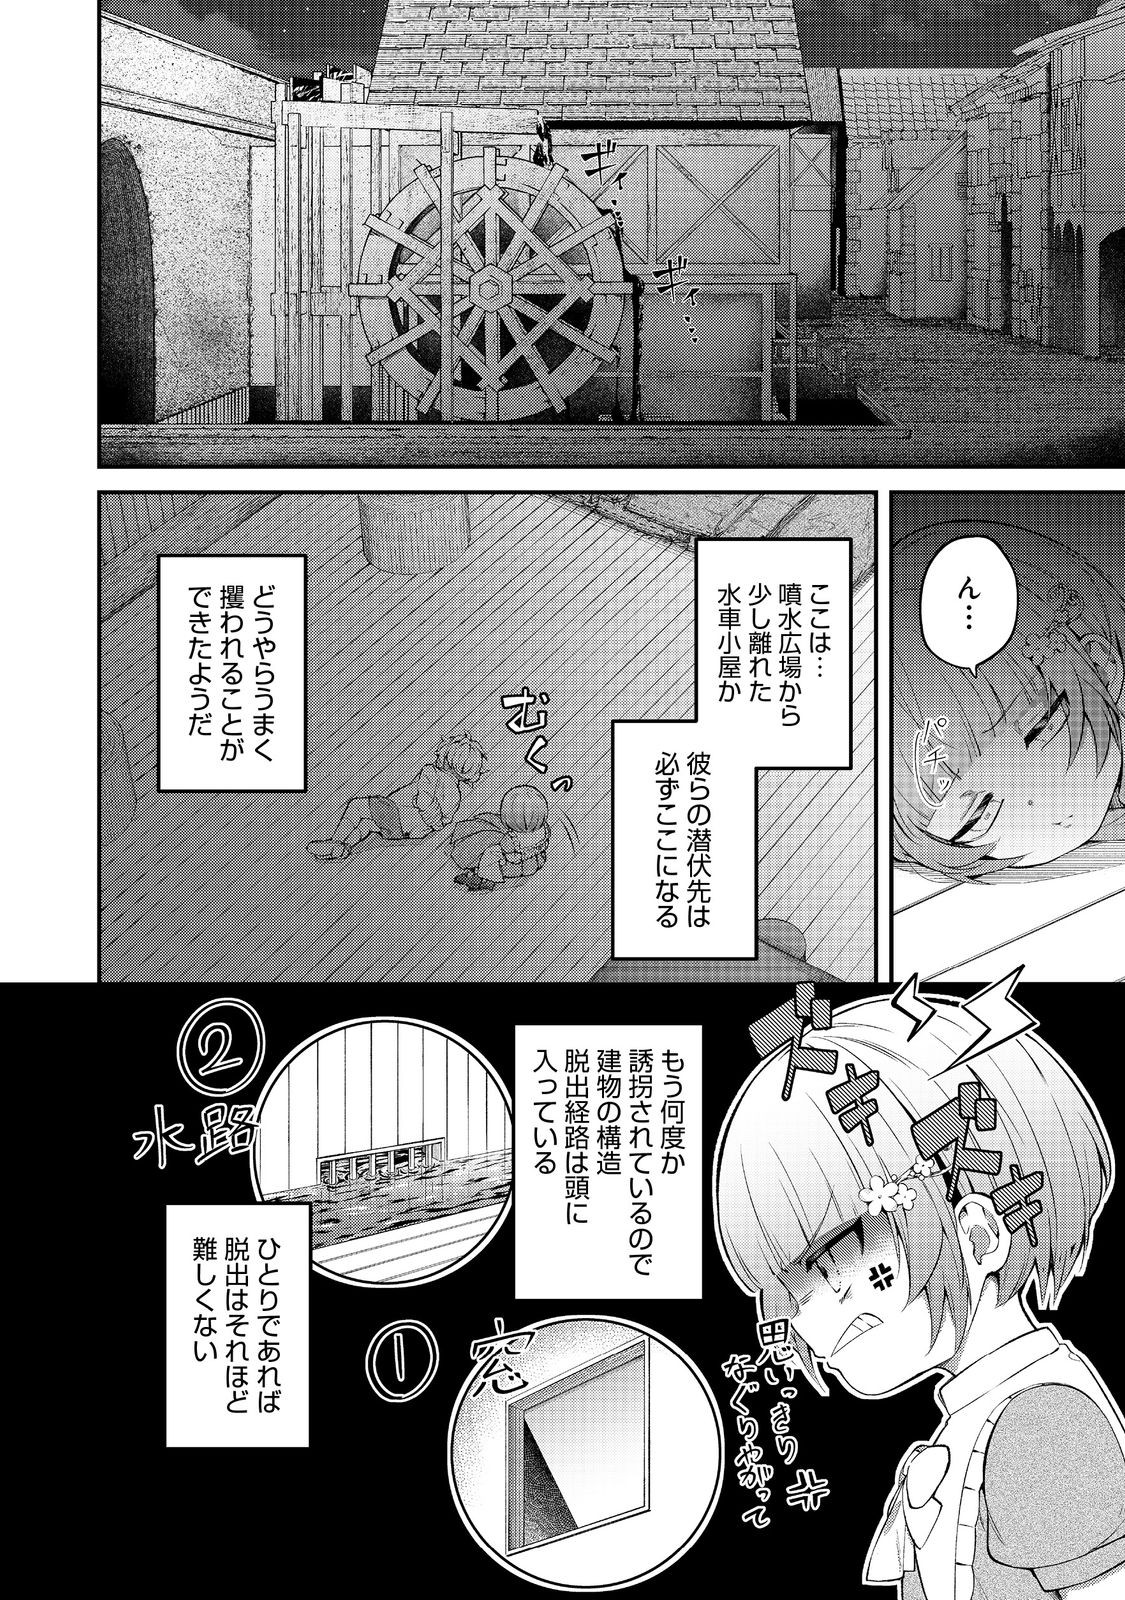 Saiai no Onee-sama ga Akuyaku Reijou datta no de, Kami ga Sadameta Scenario ni Aragaimasu - Chapter 13 - Page 2